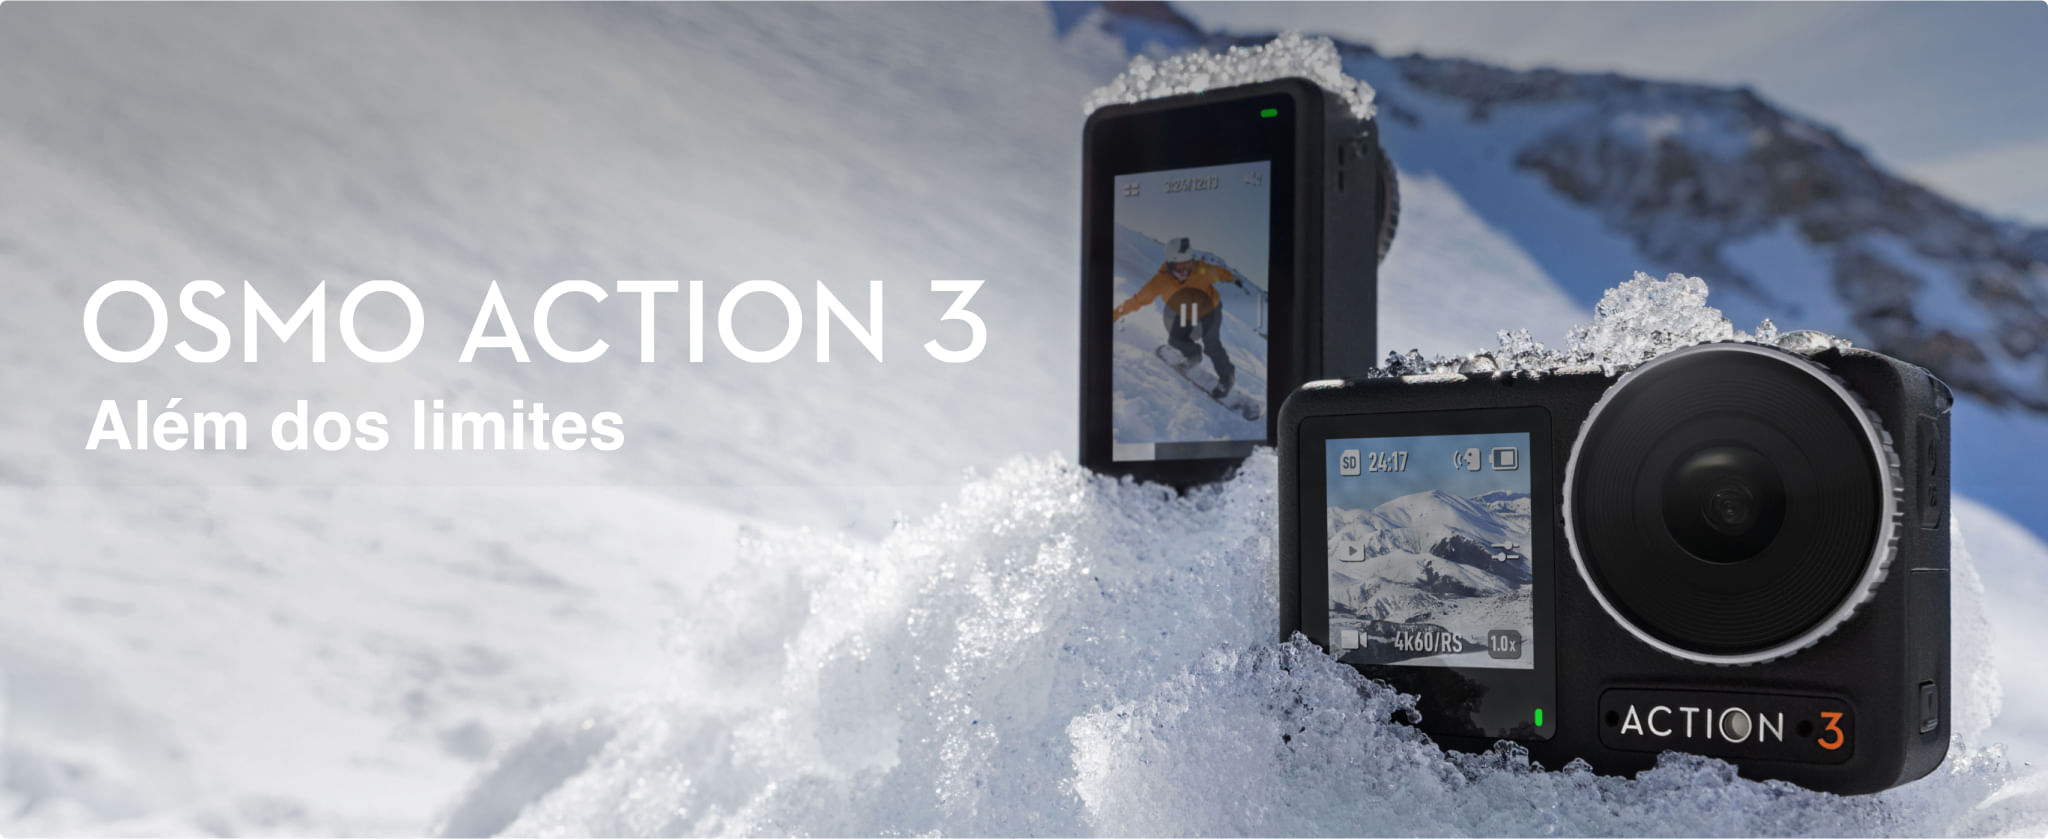 Duas DJI OSMO Action 3 no gelo para apresentação das telas frontal e traseira